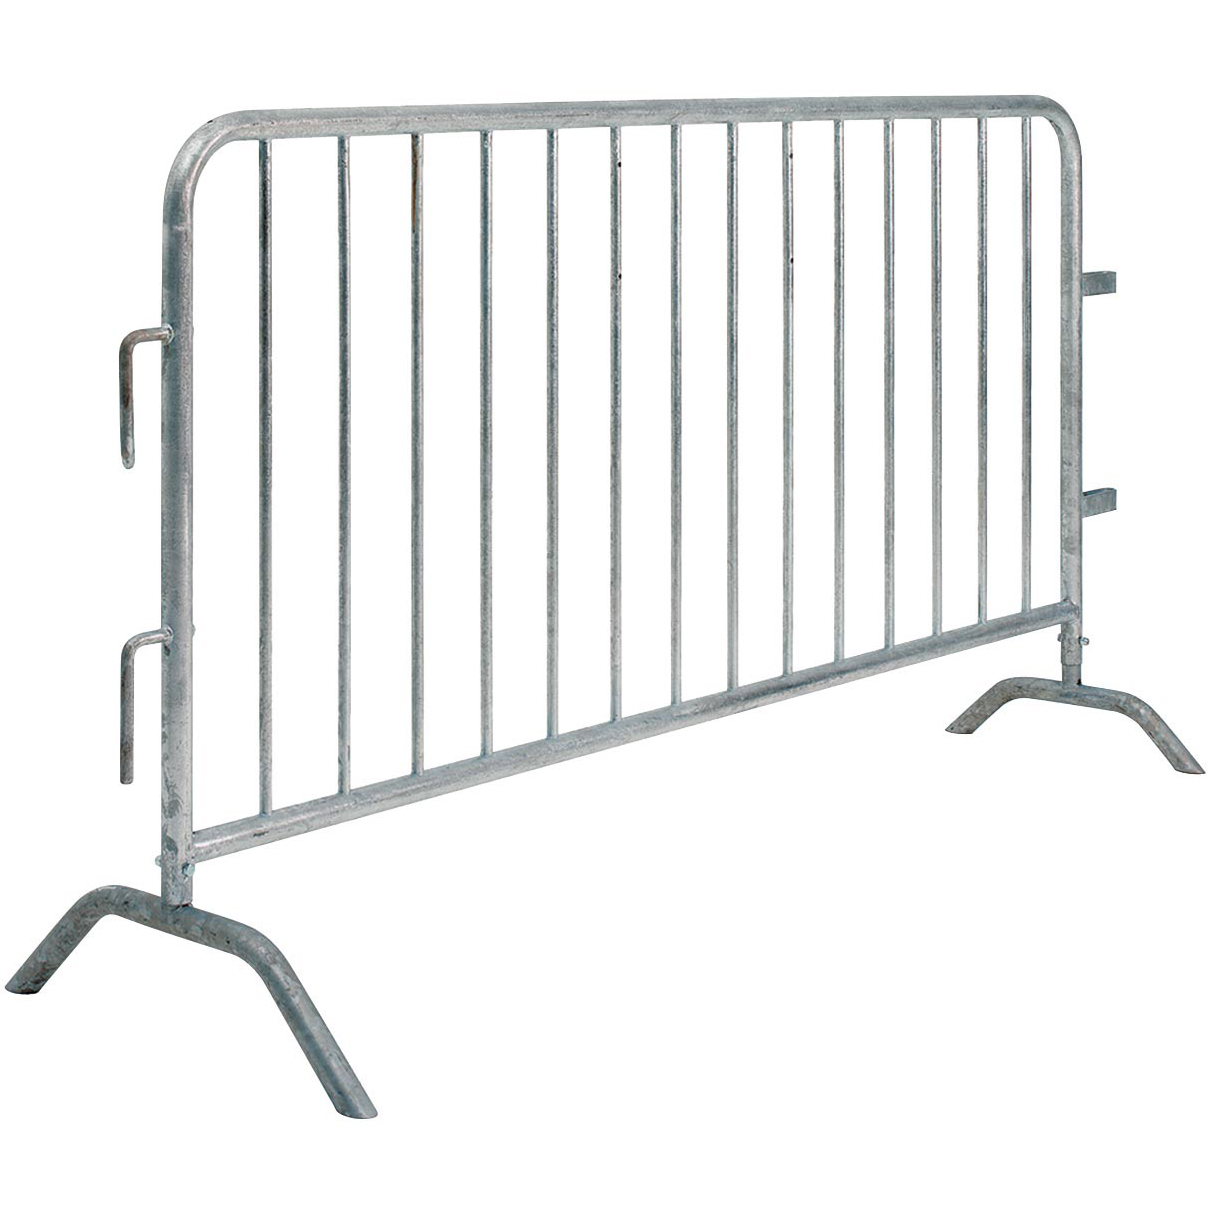 Barricade Crowd Control Fence